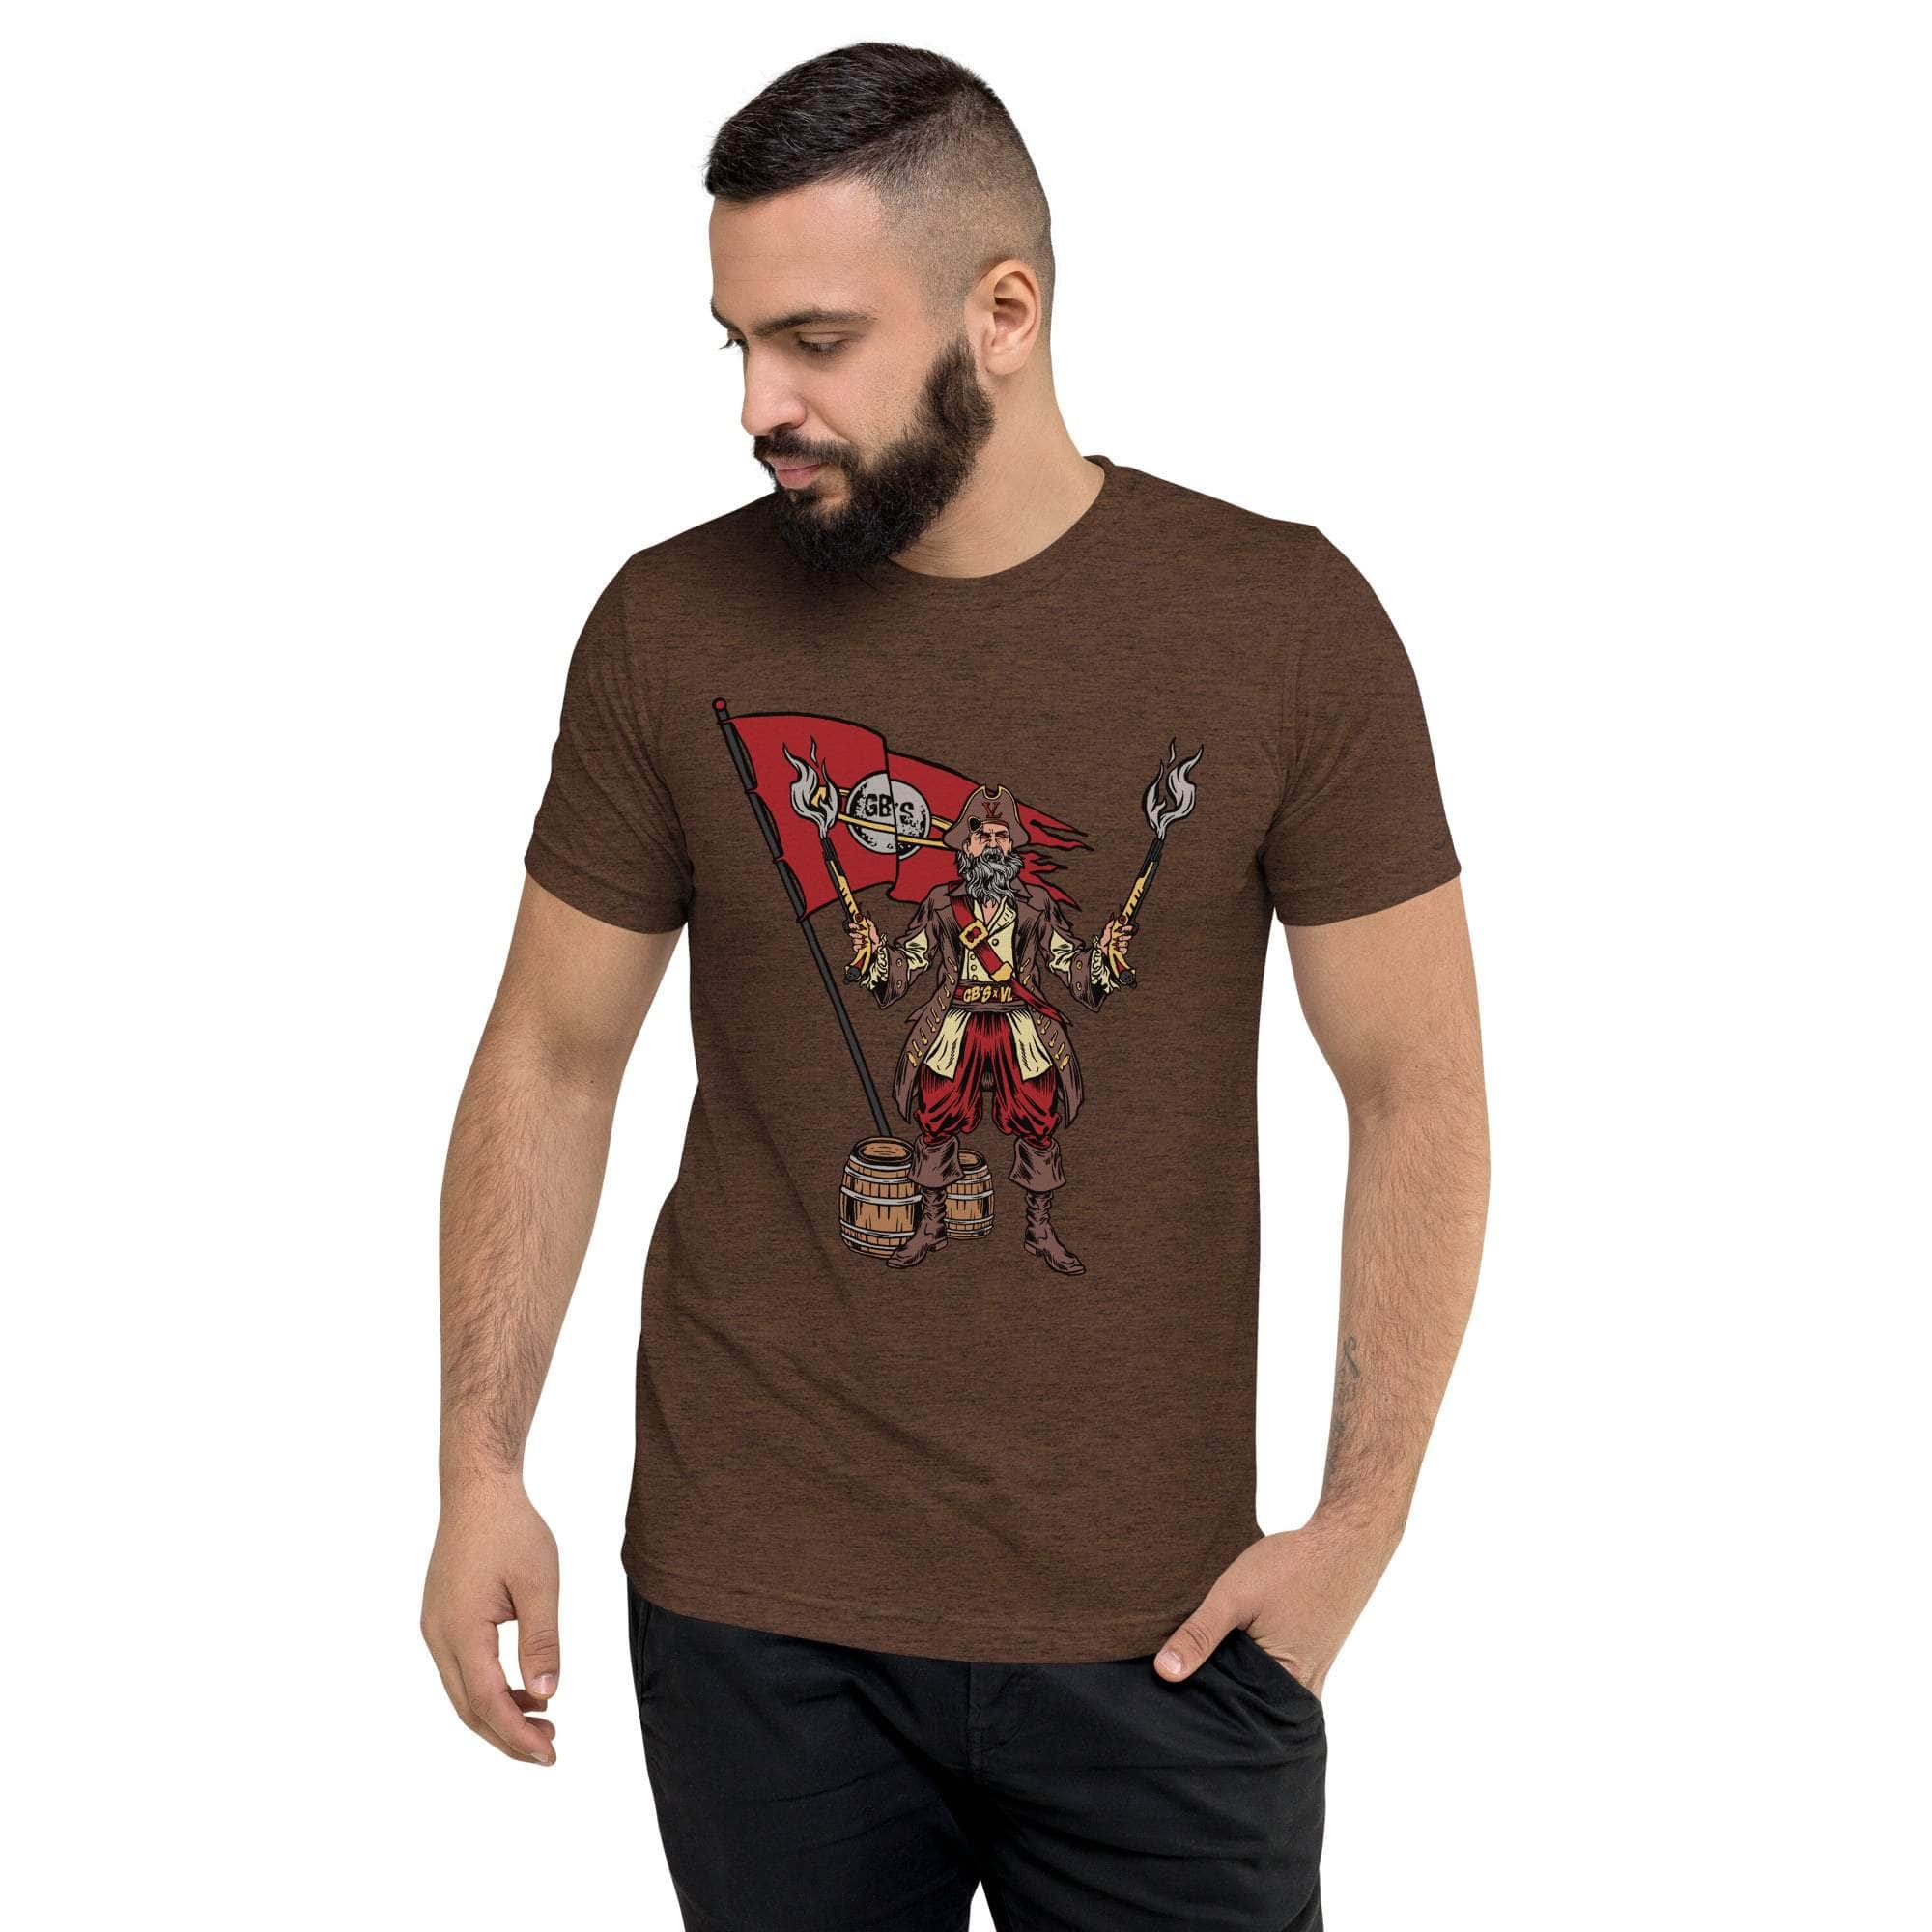 GBNY Brown Triblend / XS Vamp Life X GBNY "Pirate Vamp" T-shirt - Men's 1187077_6496